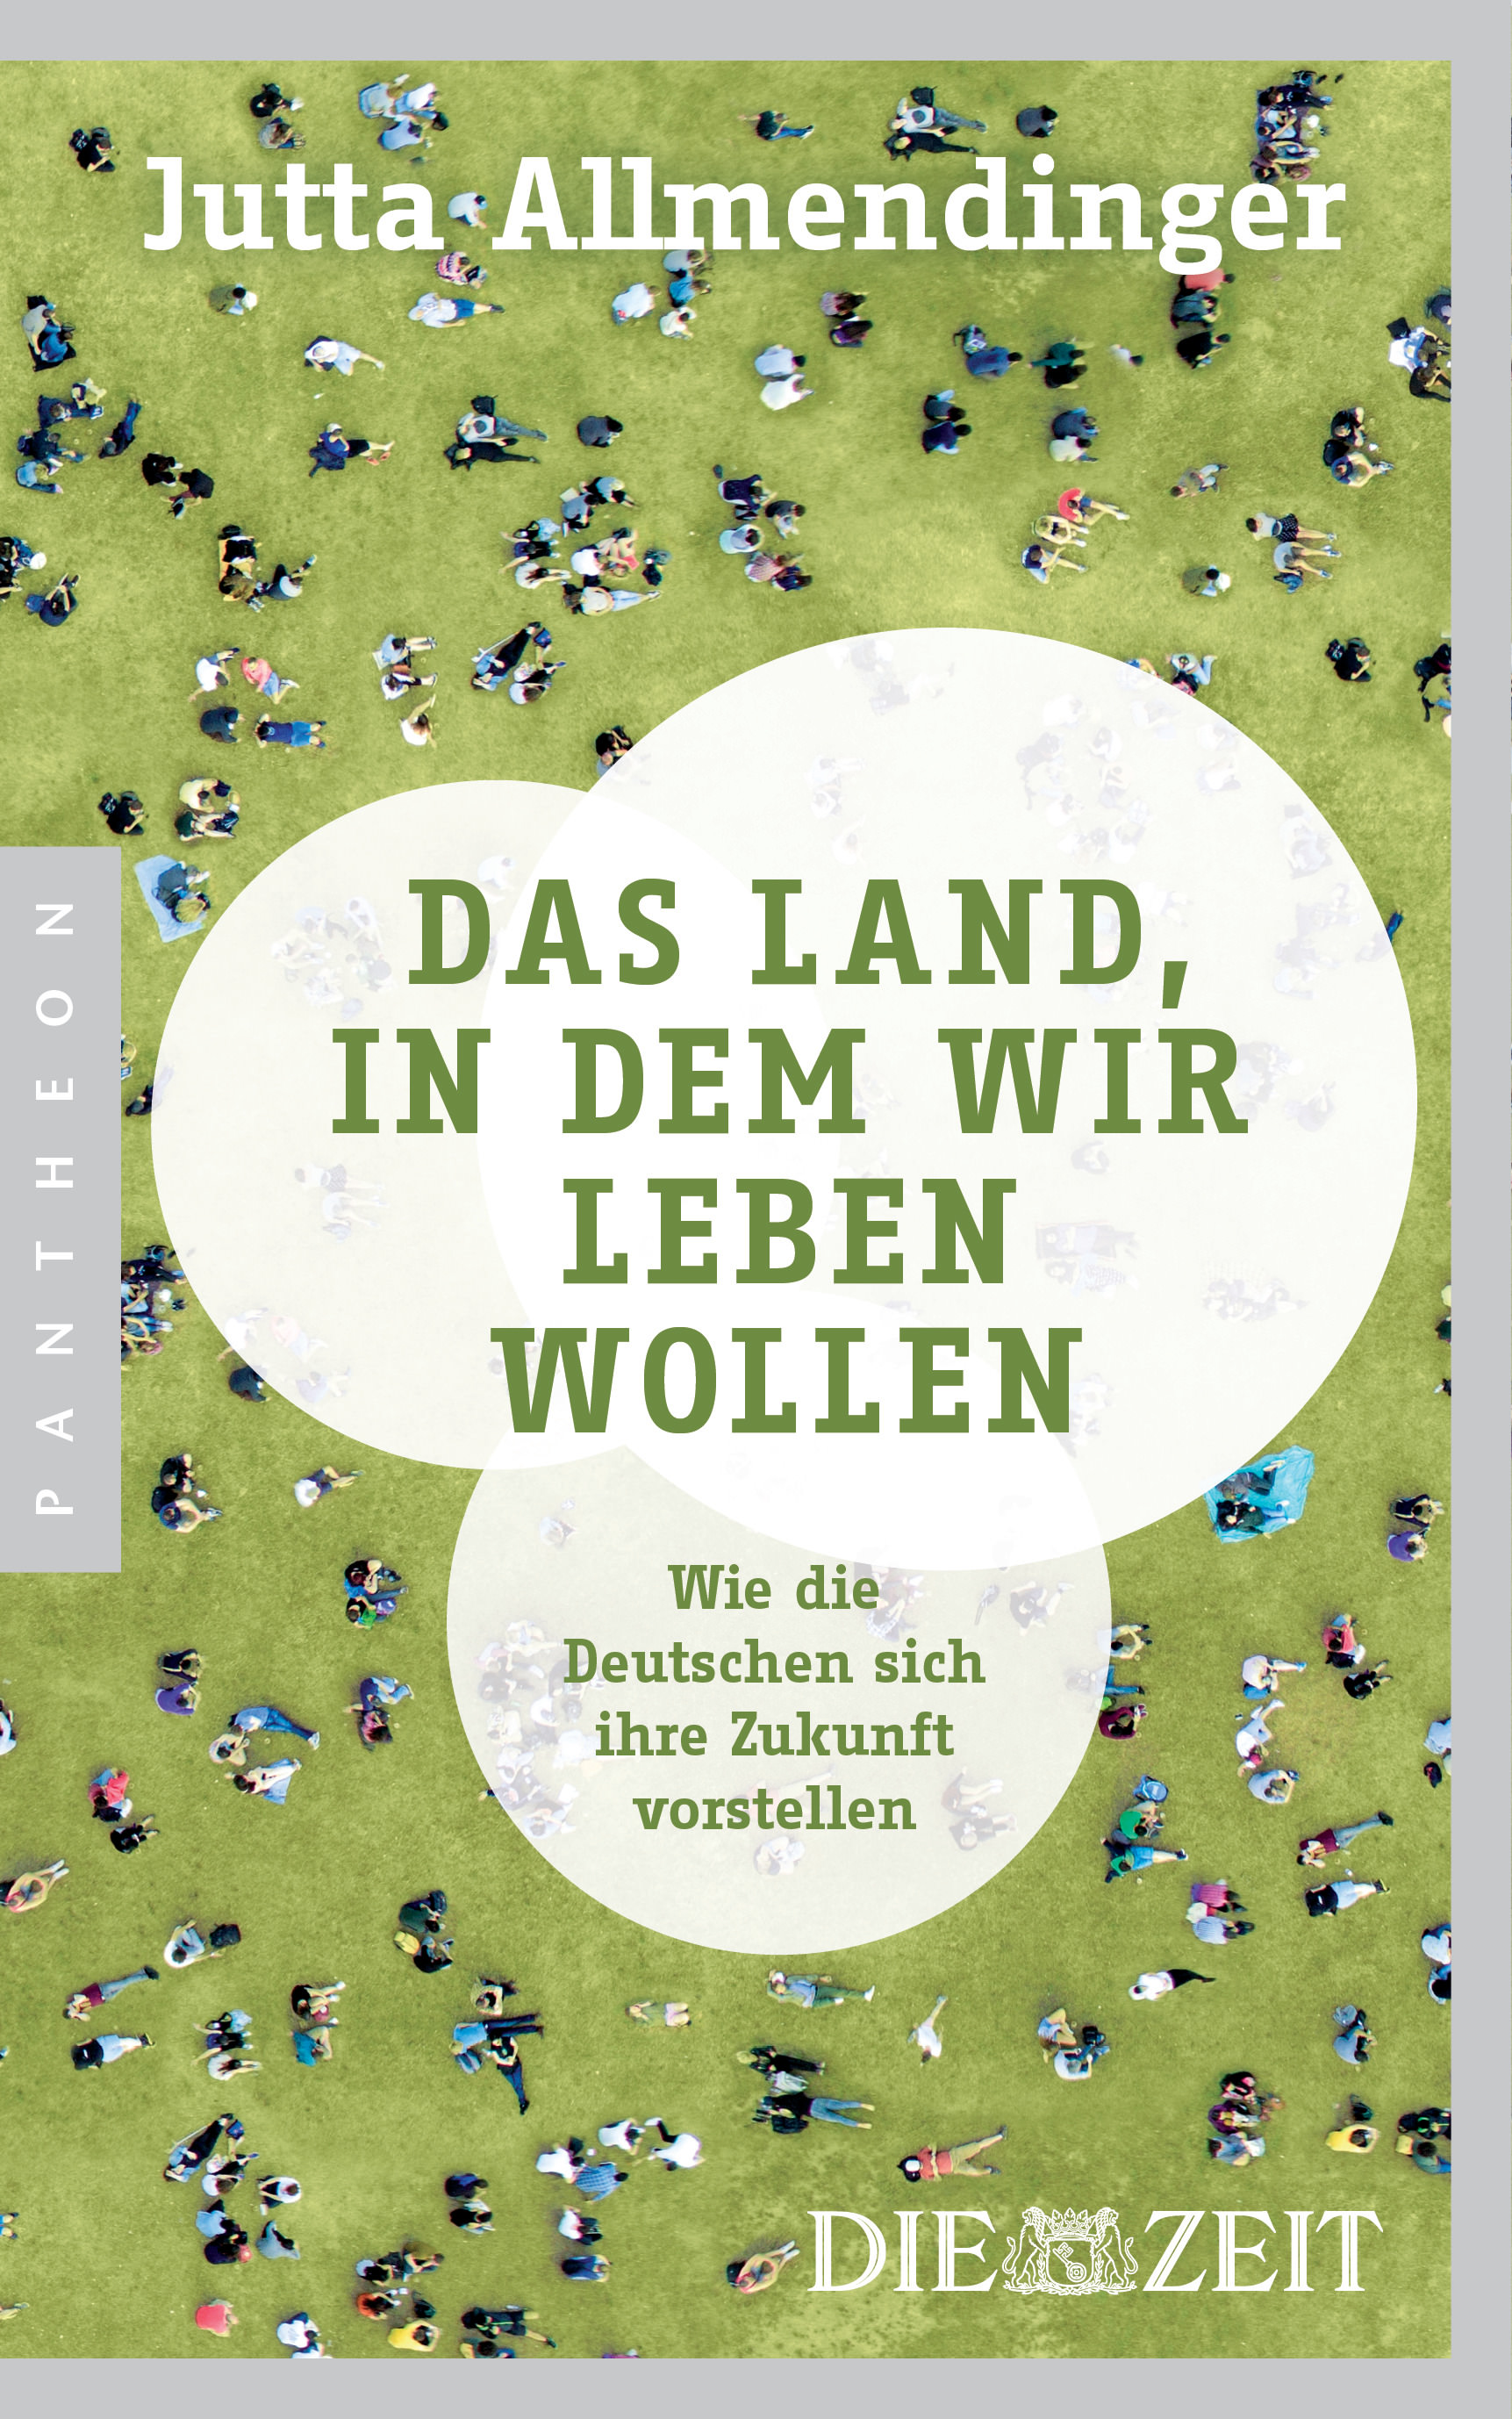 Buchcover: Jutta Allmendinger: Das Land, in dem wir leben wollen. Pantheon Verlag